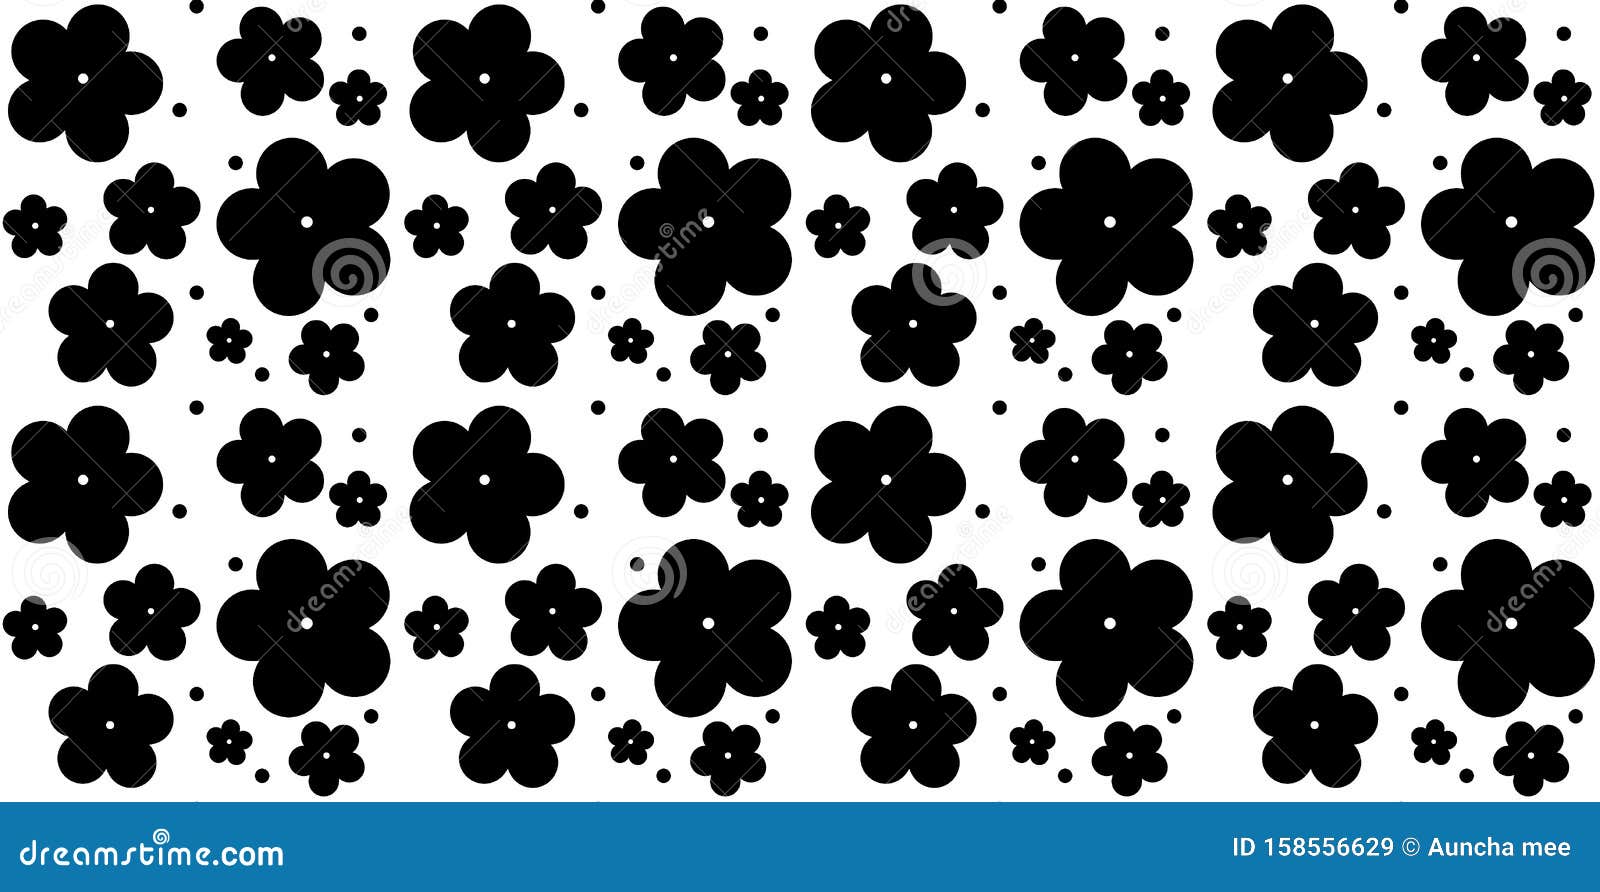 Flores Negras Con Un PatrÃ³n Transparente En Fondo Blanco. DiseÃ±o De  IlustraciÃ³n Imagen de archivo - Imagen de blanco, falda: 158556629